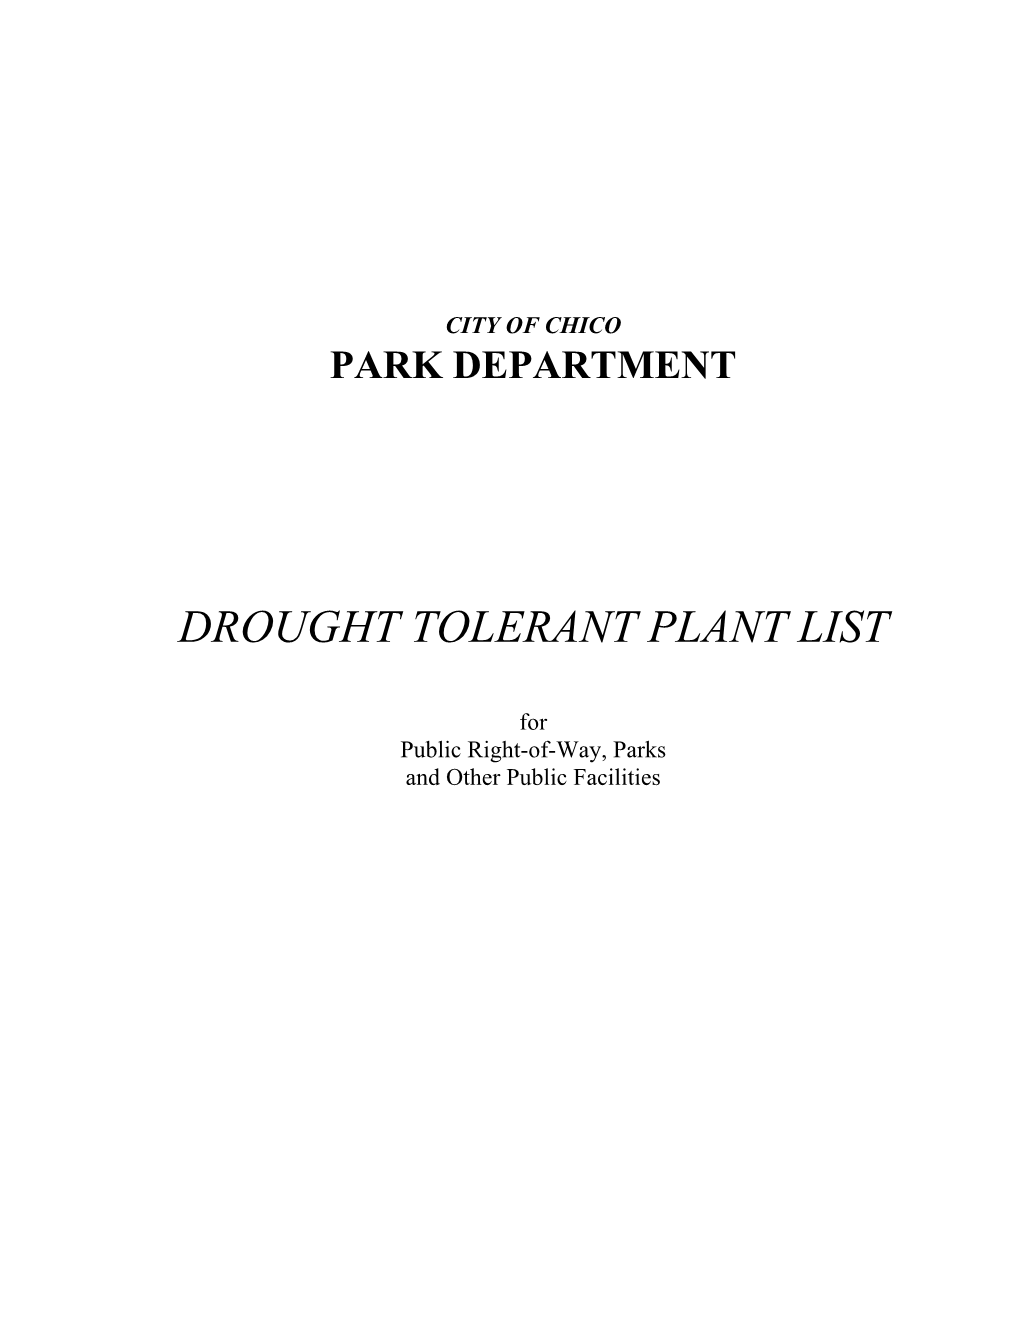 Drought Tolerant Plant List